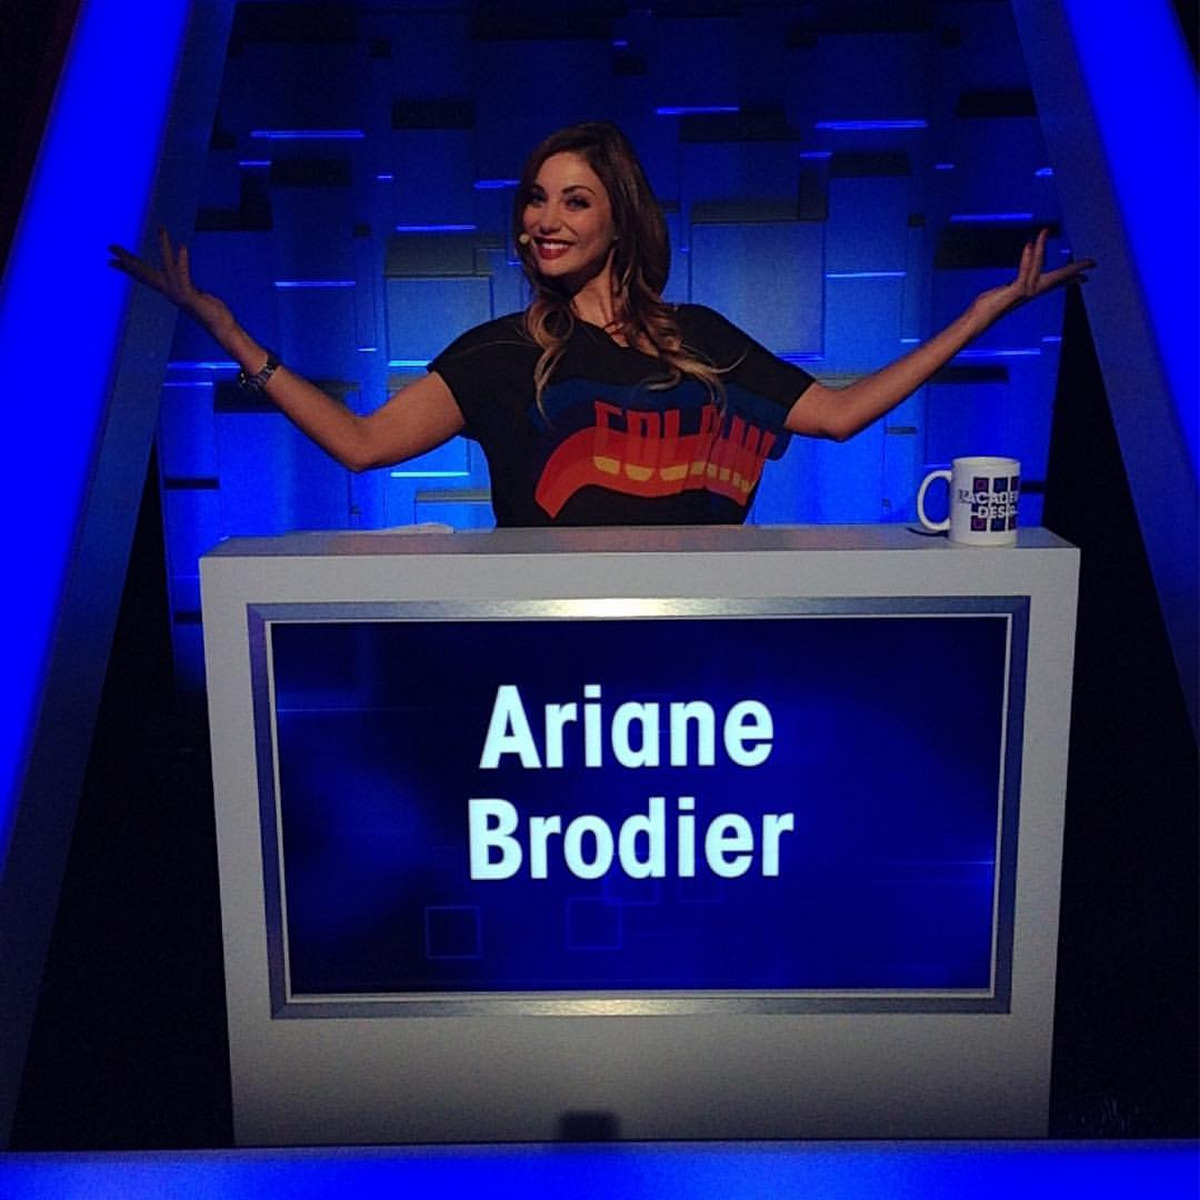 Ariane Brodier